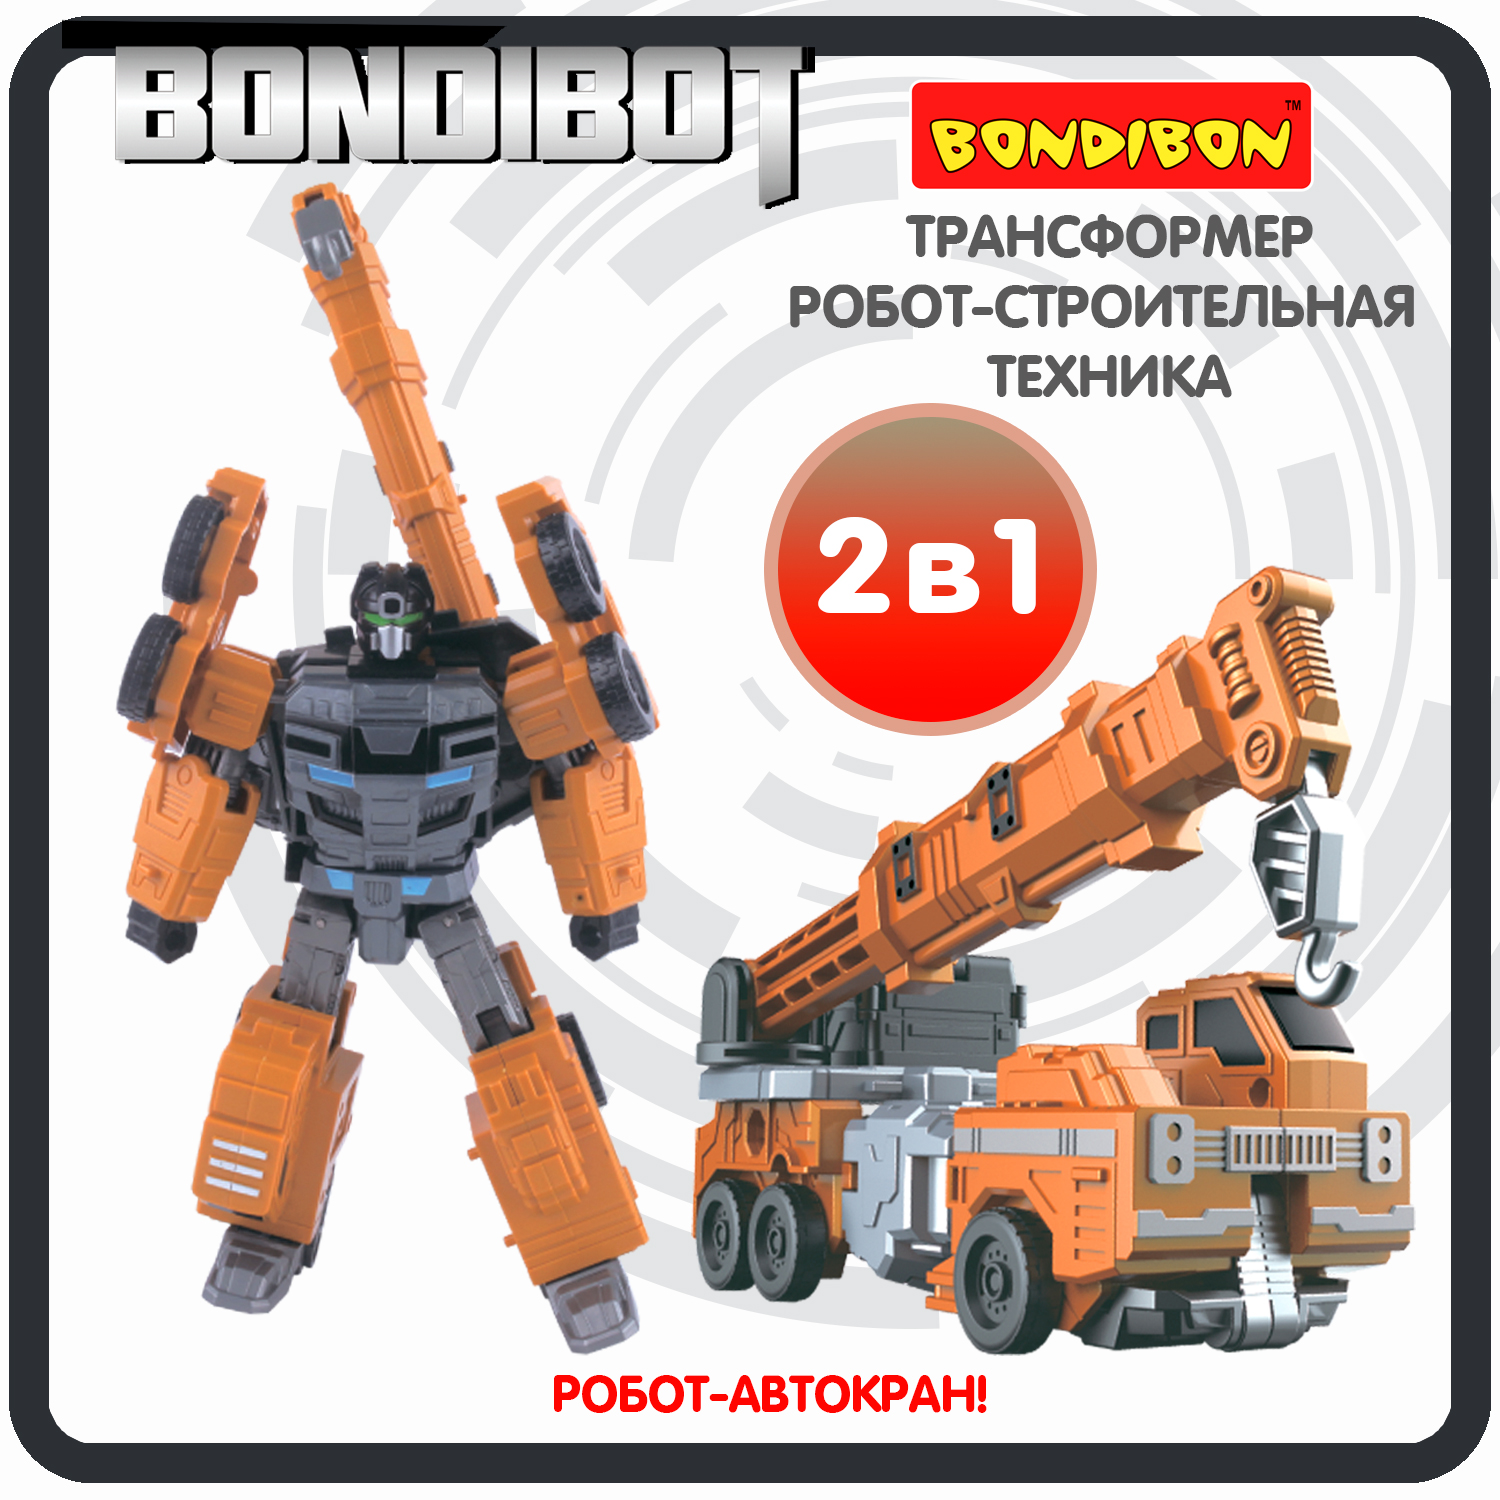 Трансформер робот-строительная техника, 2в1 BONDIBOT Bondibon, автокран / ВВ6056 форма машина автокран детский сад